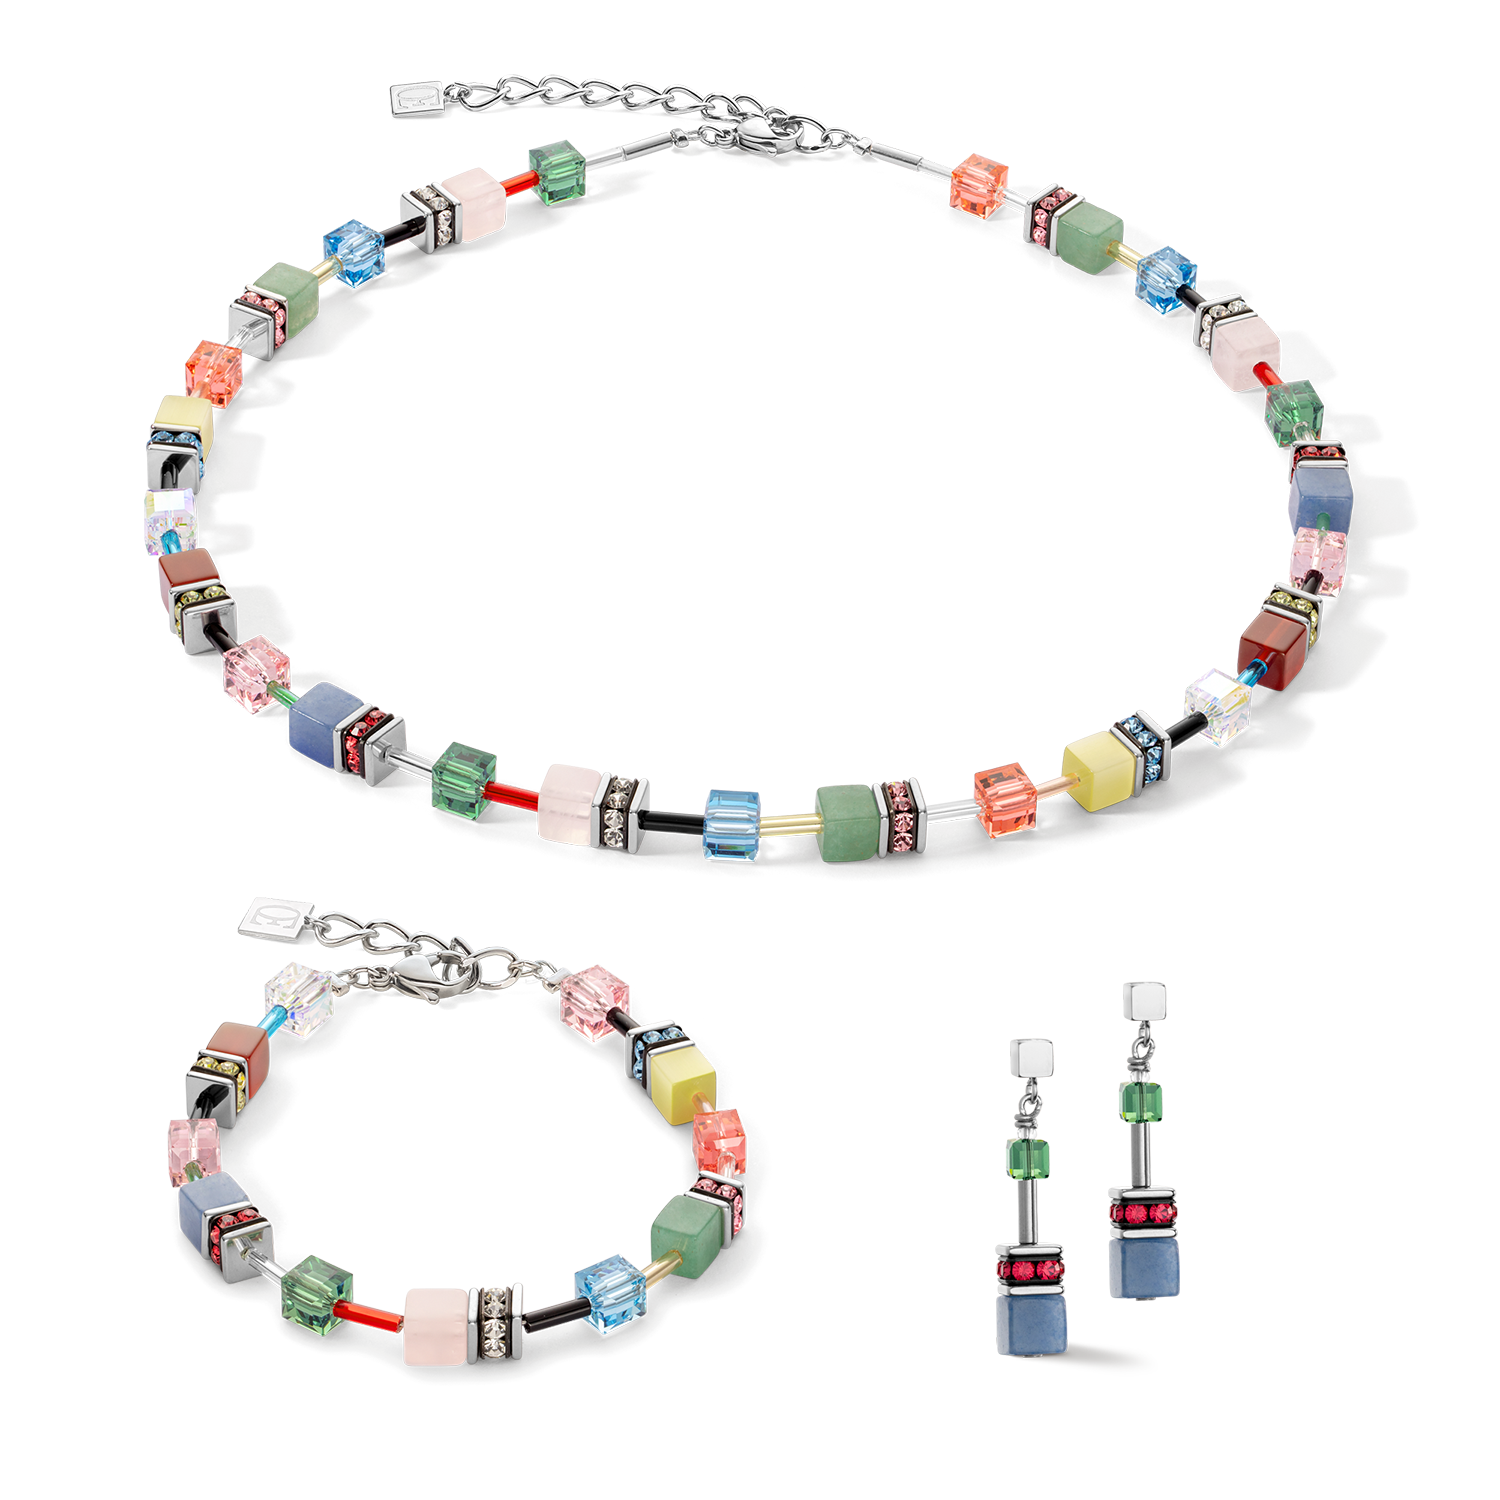 GeoCUBE® Iconic Precious necklace Multicolour Delight